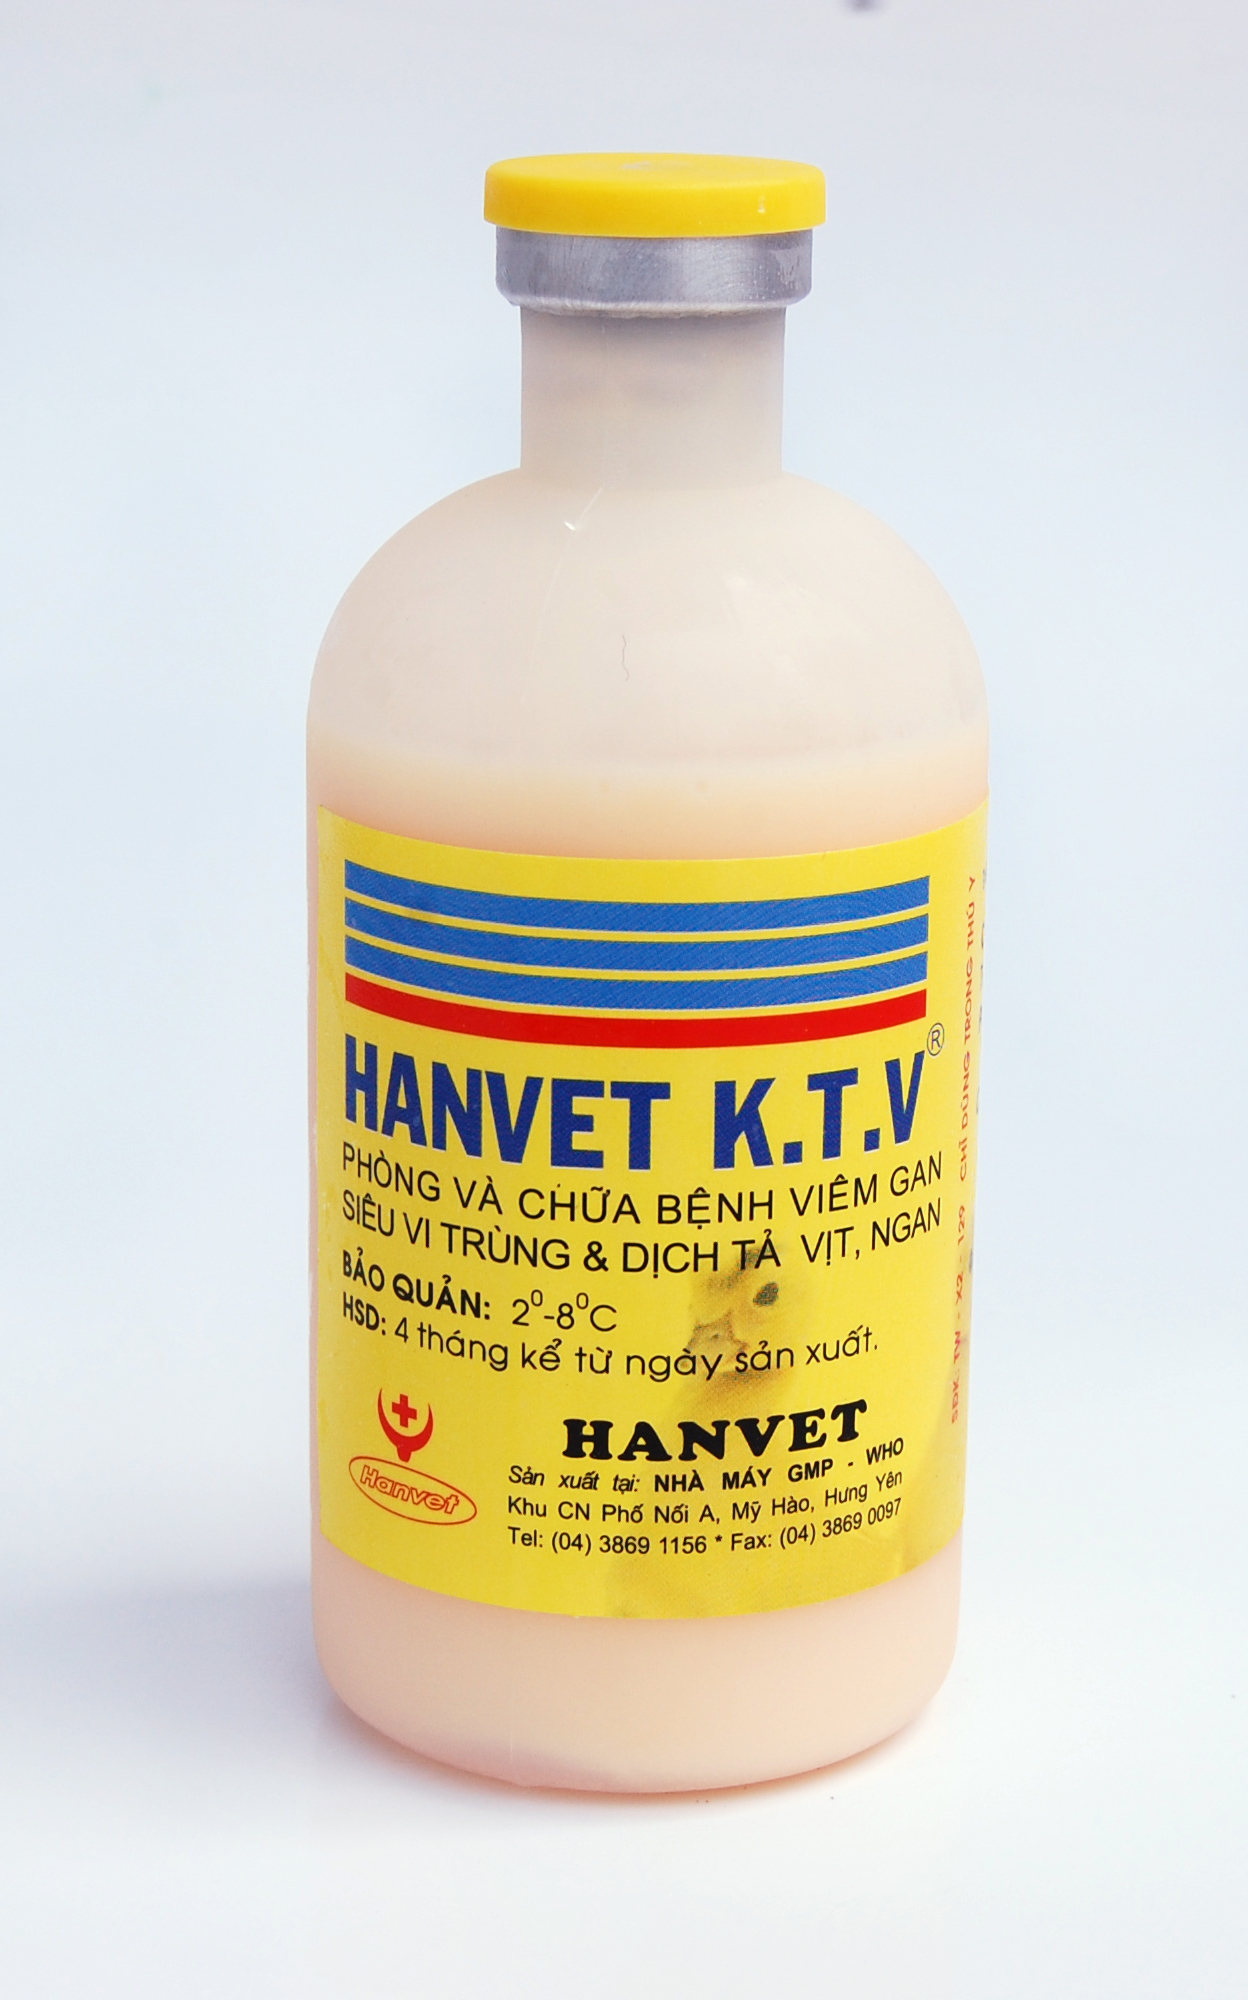 HANVET K.T.V